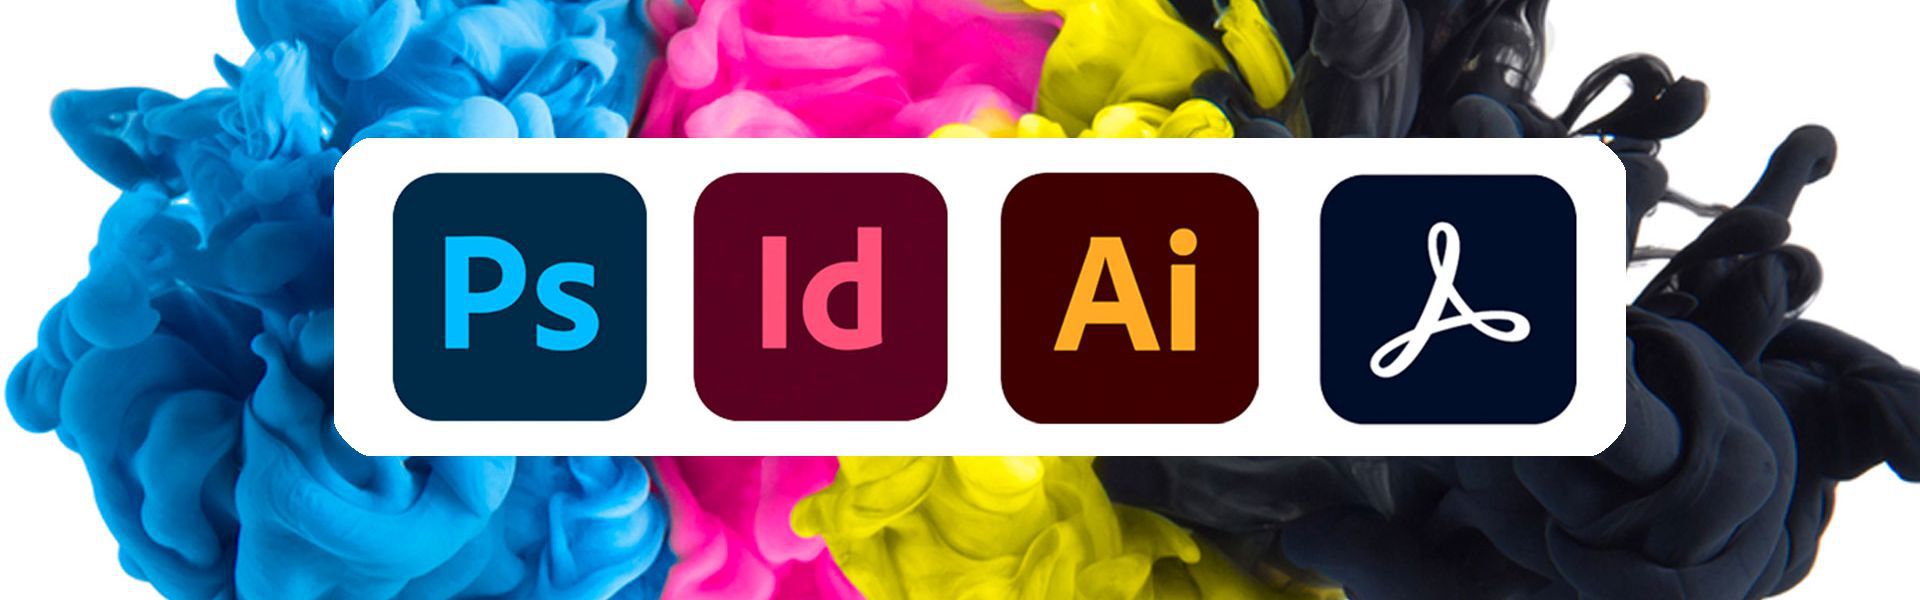 101 | Allround DTP-er met Adobe worden